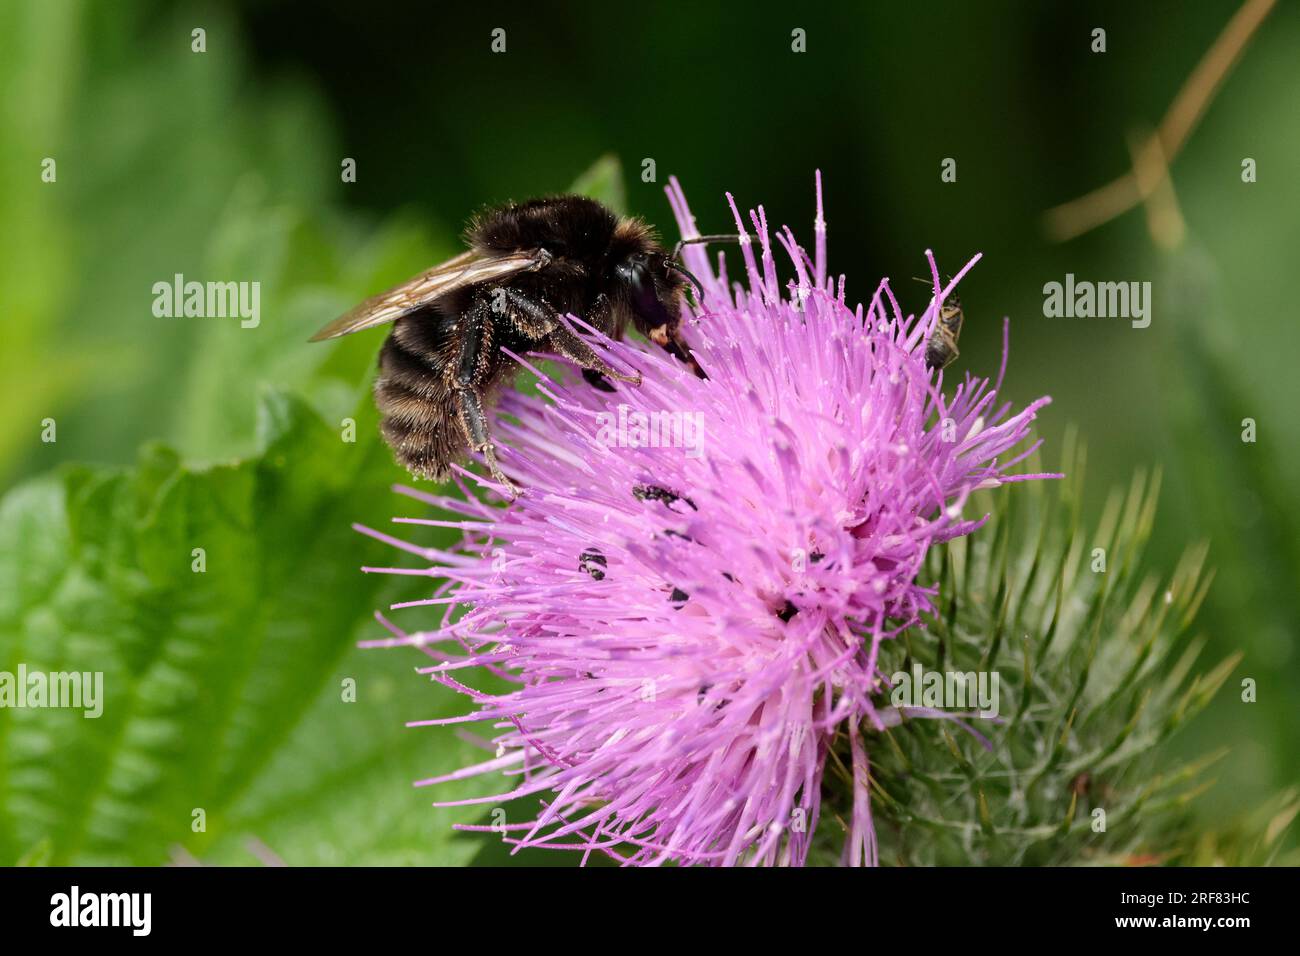 Ruderale Hummel Bombus ruderatus, melanische Sorte schwarze Hummel auf violettem Blumenmuster, Ingwerhaare von Unterkiefer graue Bänder am Bauch Sommer Sonnenlicht Stockfoto